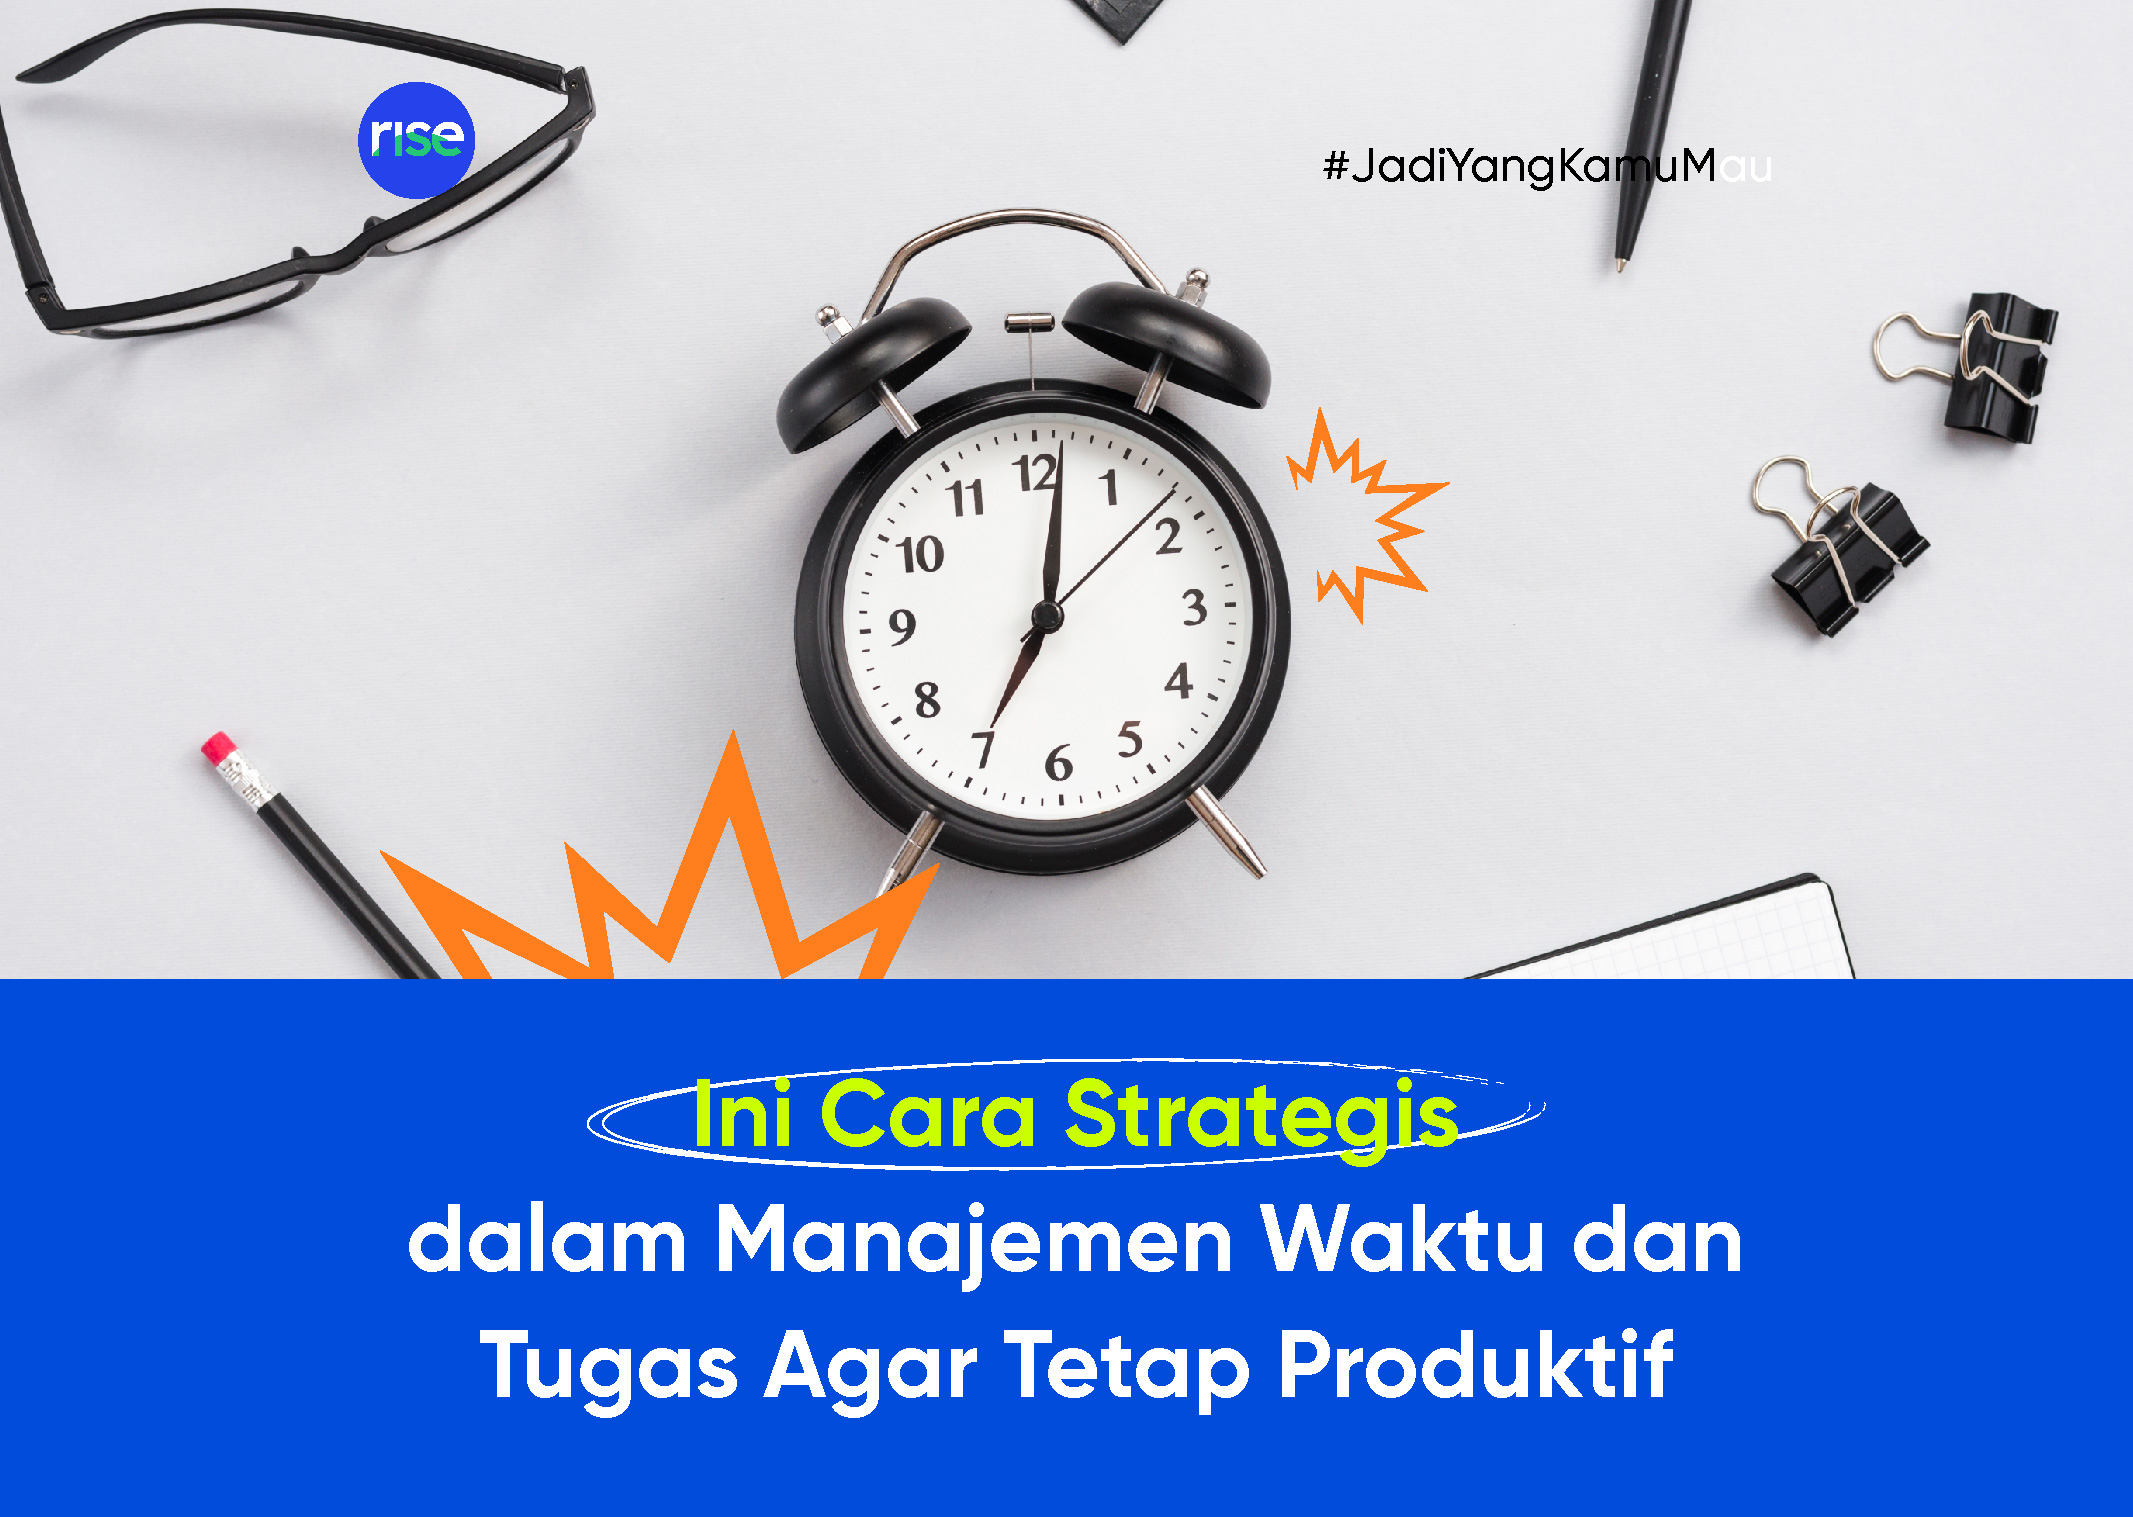 Ini Cara Strategis dalam Manajemen Waktu dan Tugas Agar Tetap Produktif